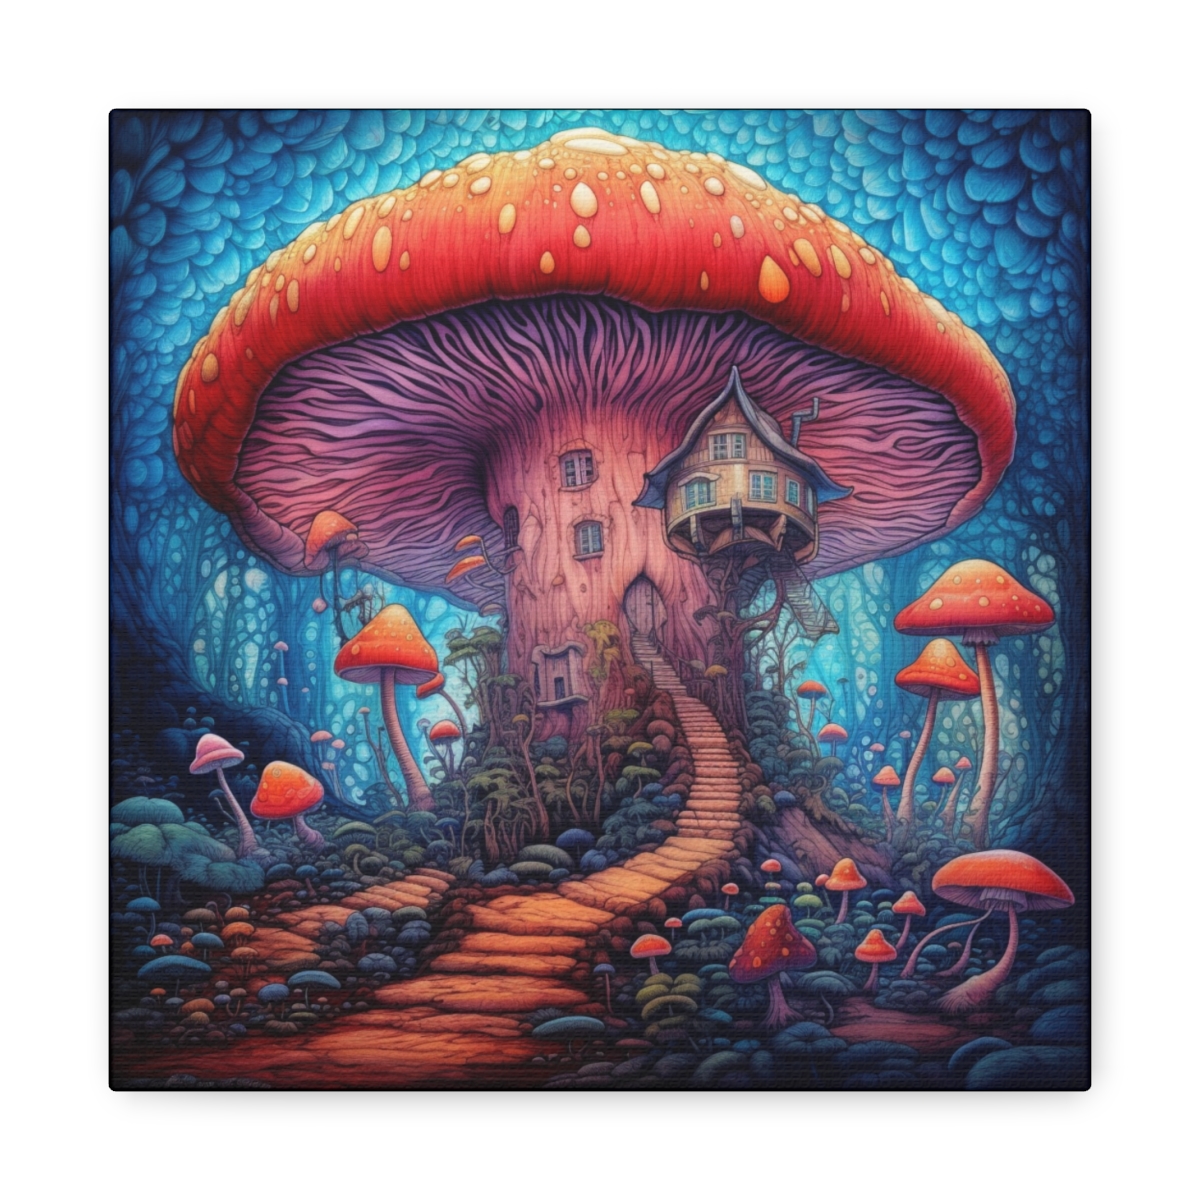 Mushroom Art Canvas Print: Fungal Fantasia